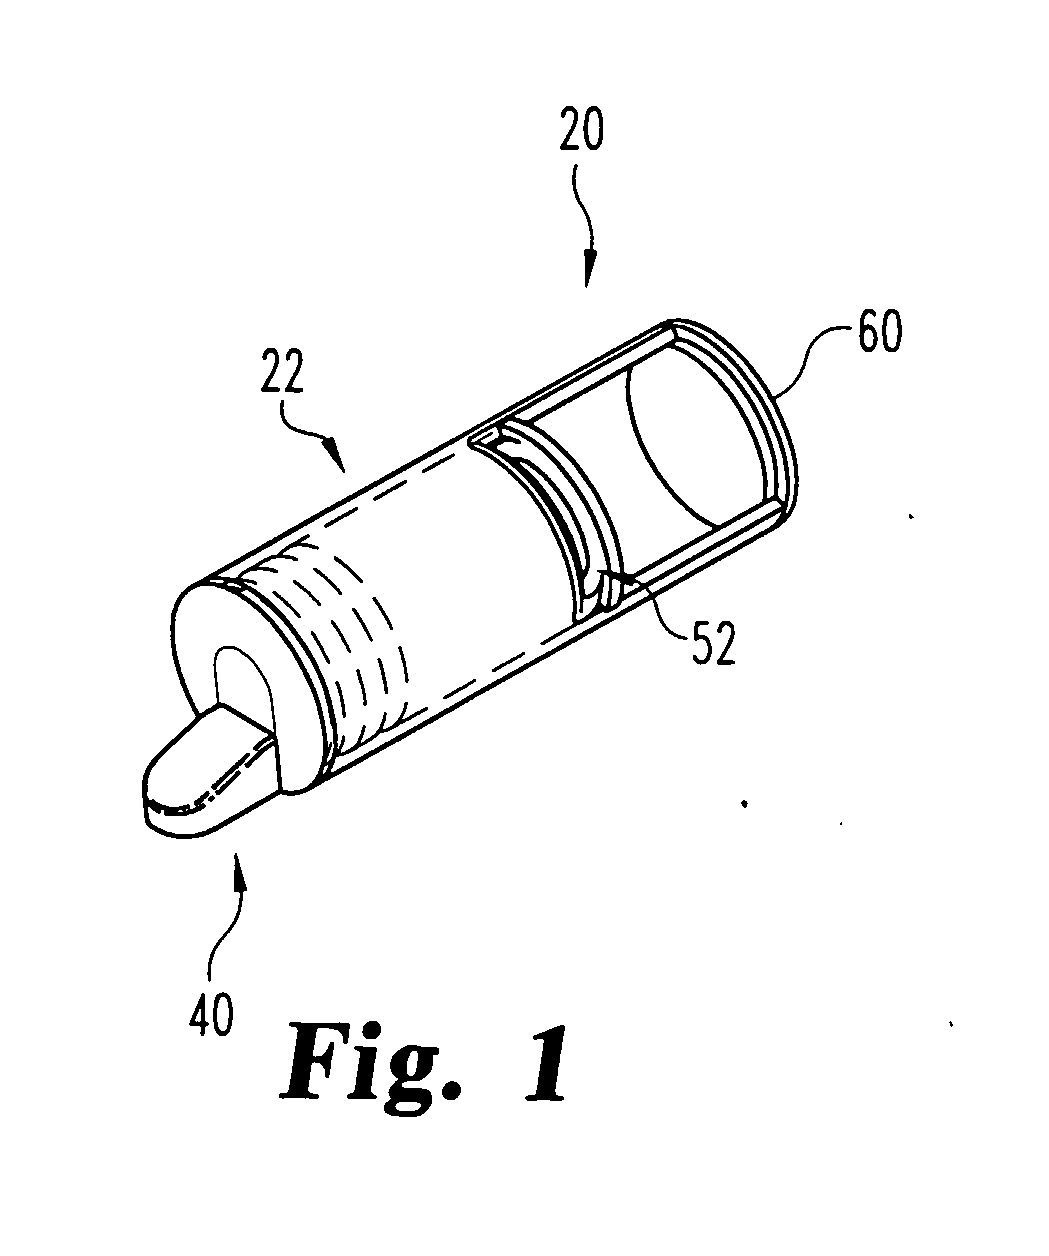 Multiple septum cartridge for medication dispensing device